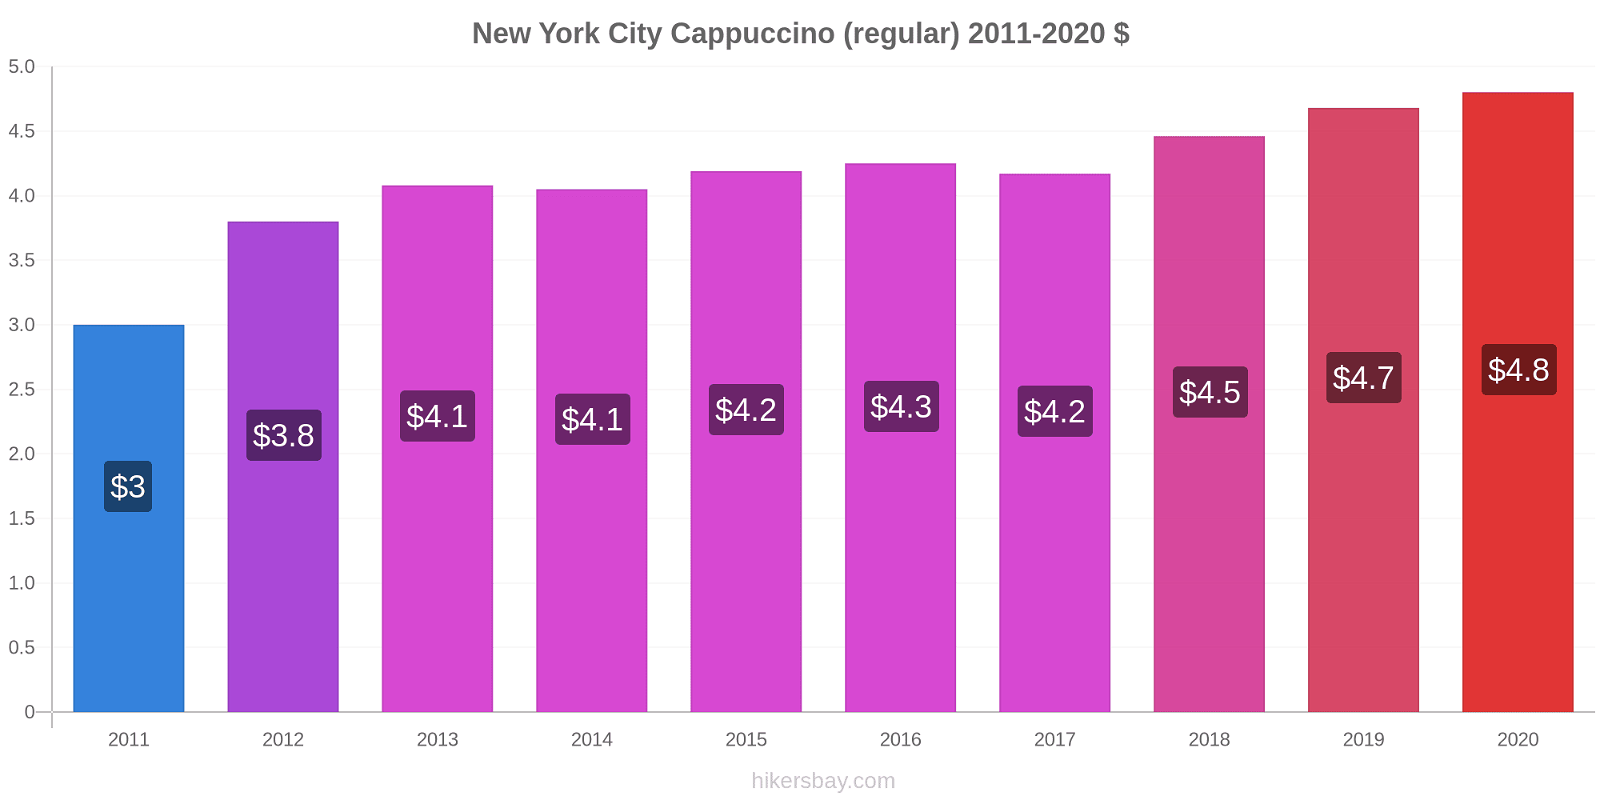 New York City price changes Cappuccino (regular) hikersbay.com